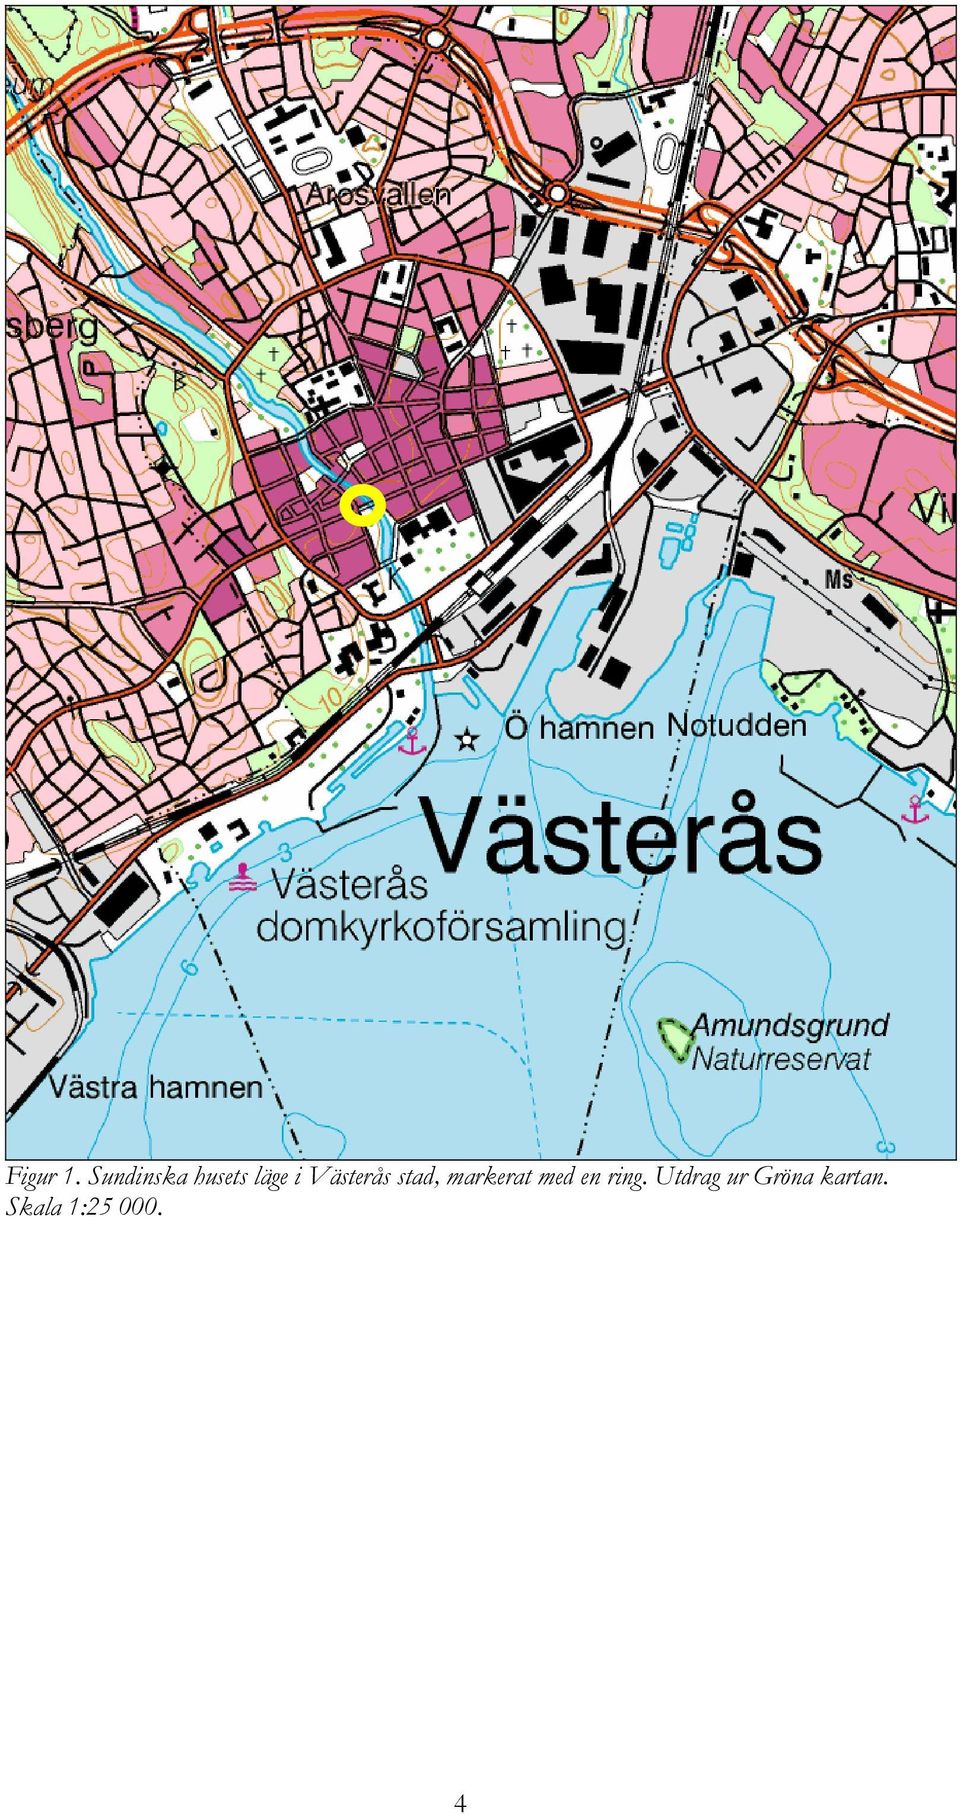 Västerås stad, markerat med